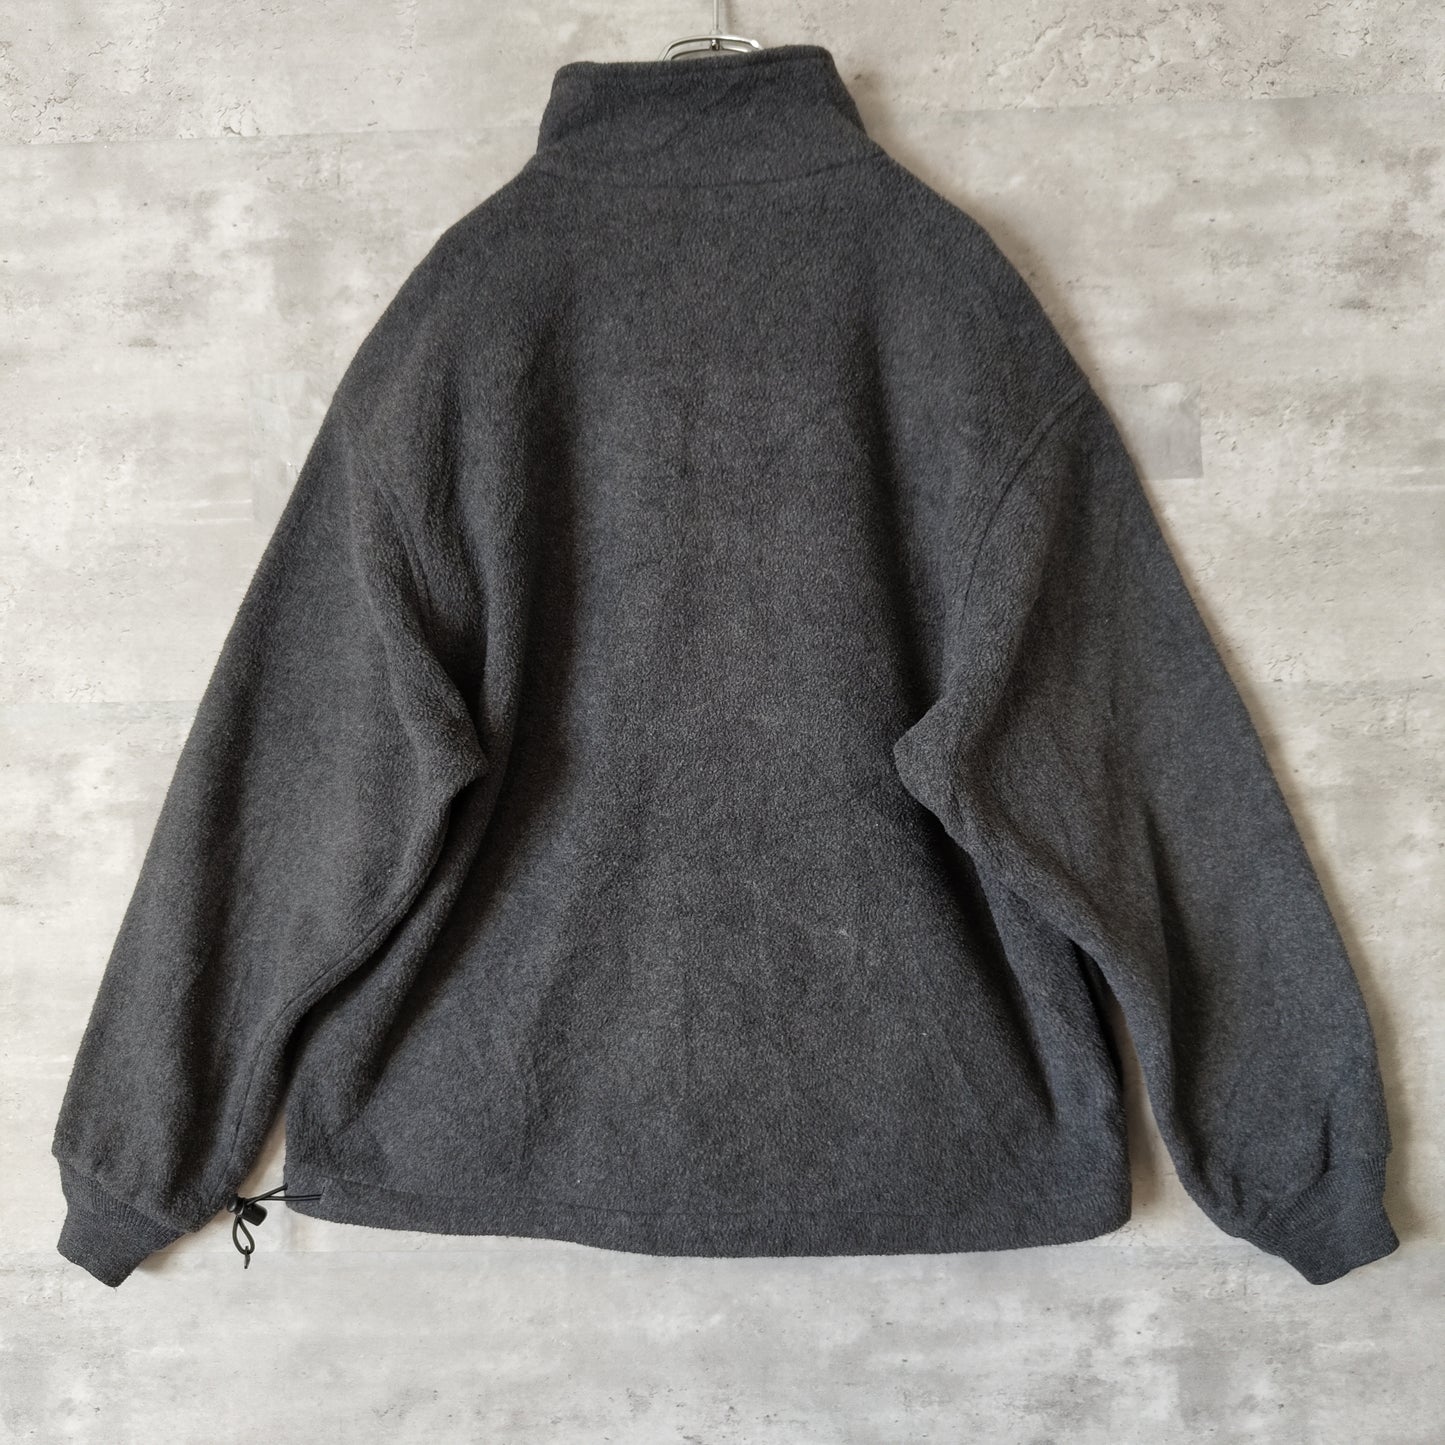 [EddieBouer] halfzip fleece jacket